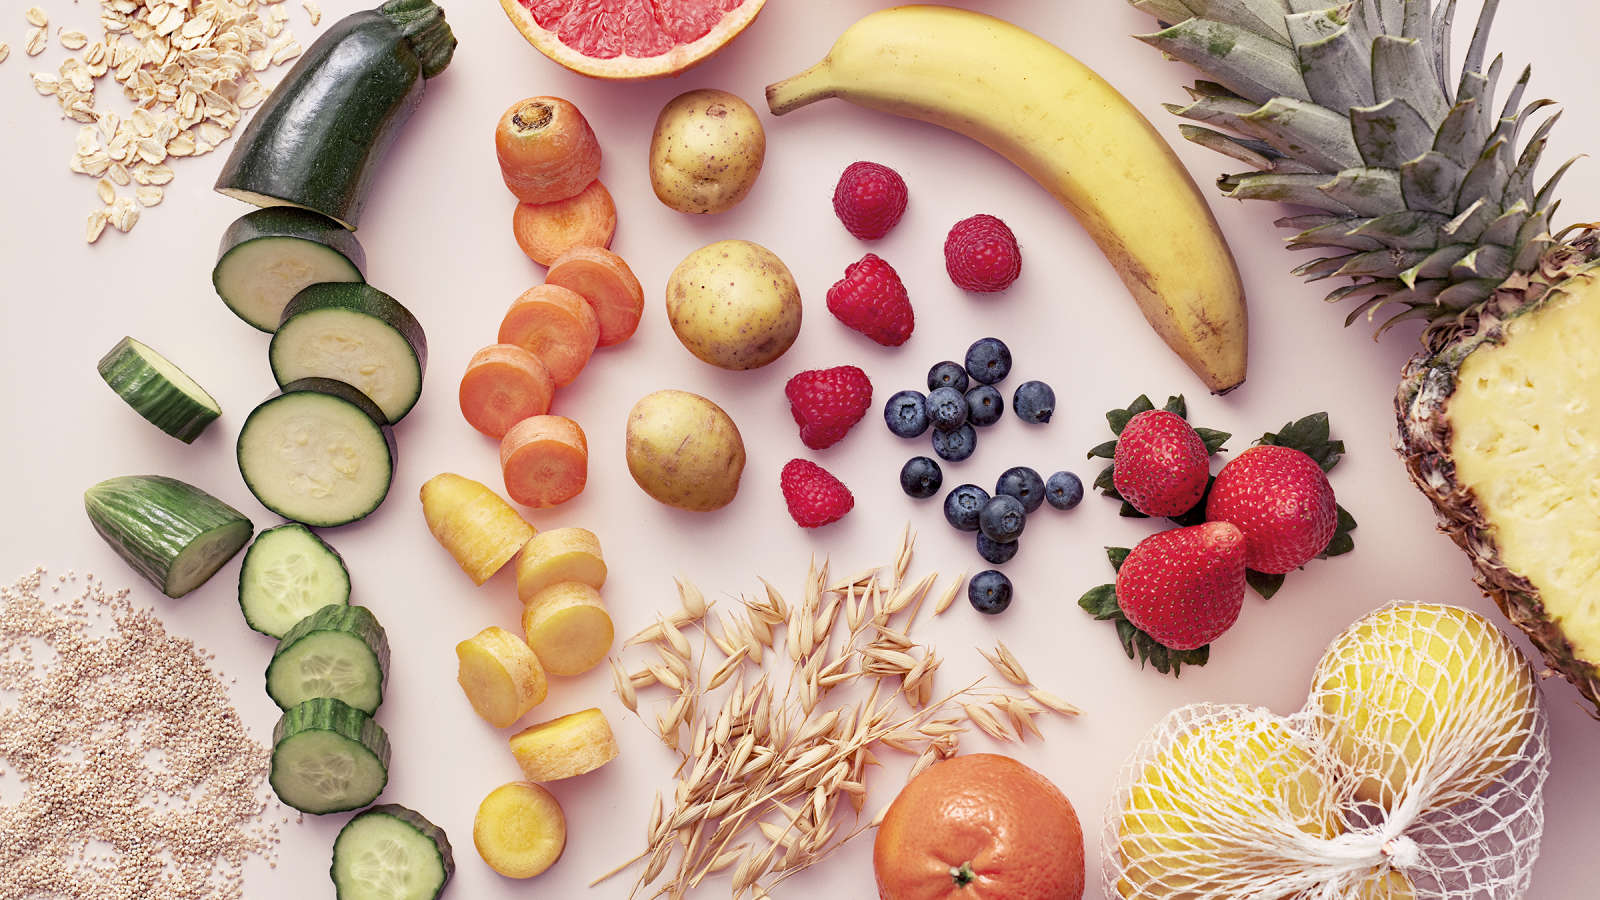 Fodmap-ruokavalioon sopivia aineksia: kurkkua, perunaa, mansikoita, banaania, ananasta, kesäkurpitsaa, kauraa.